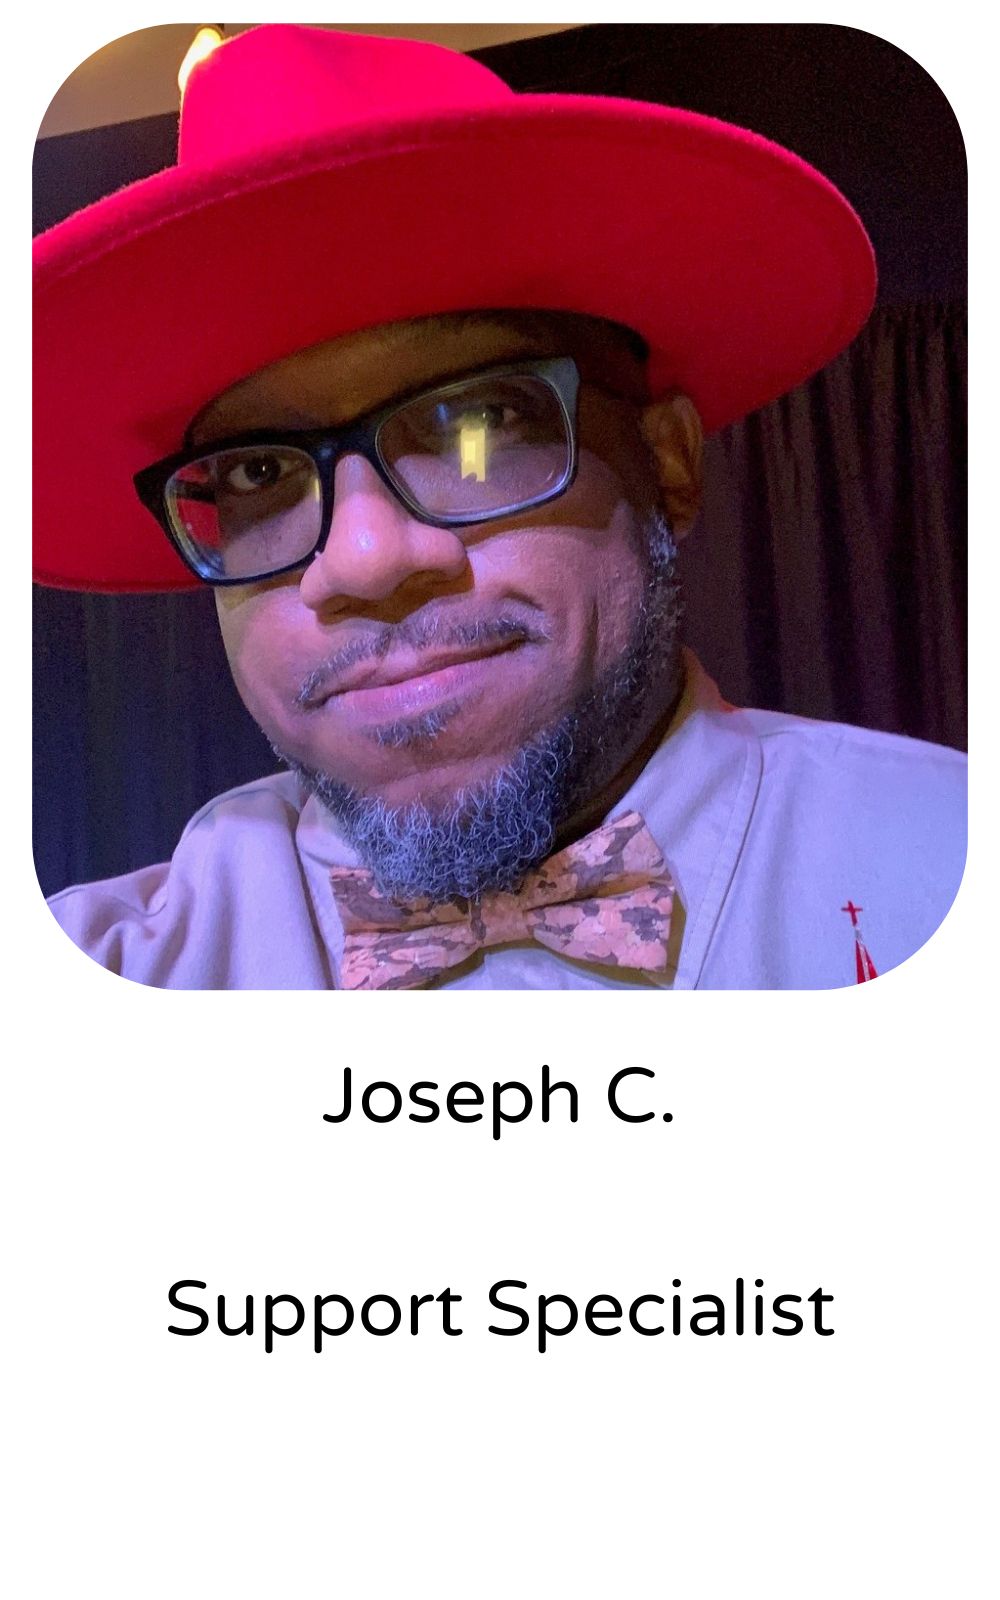 Joseph C, Support Specialist